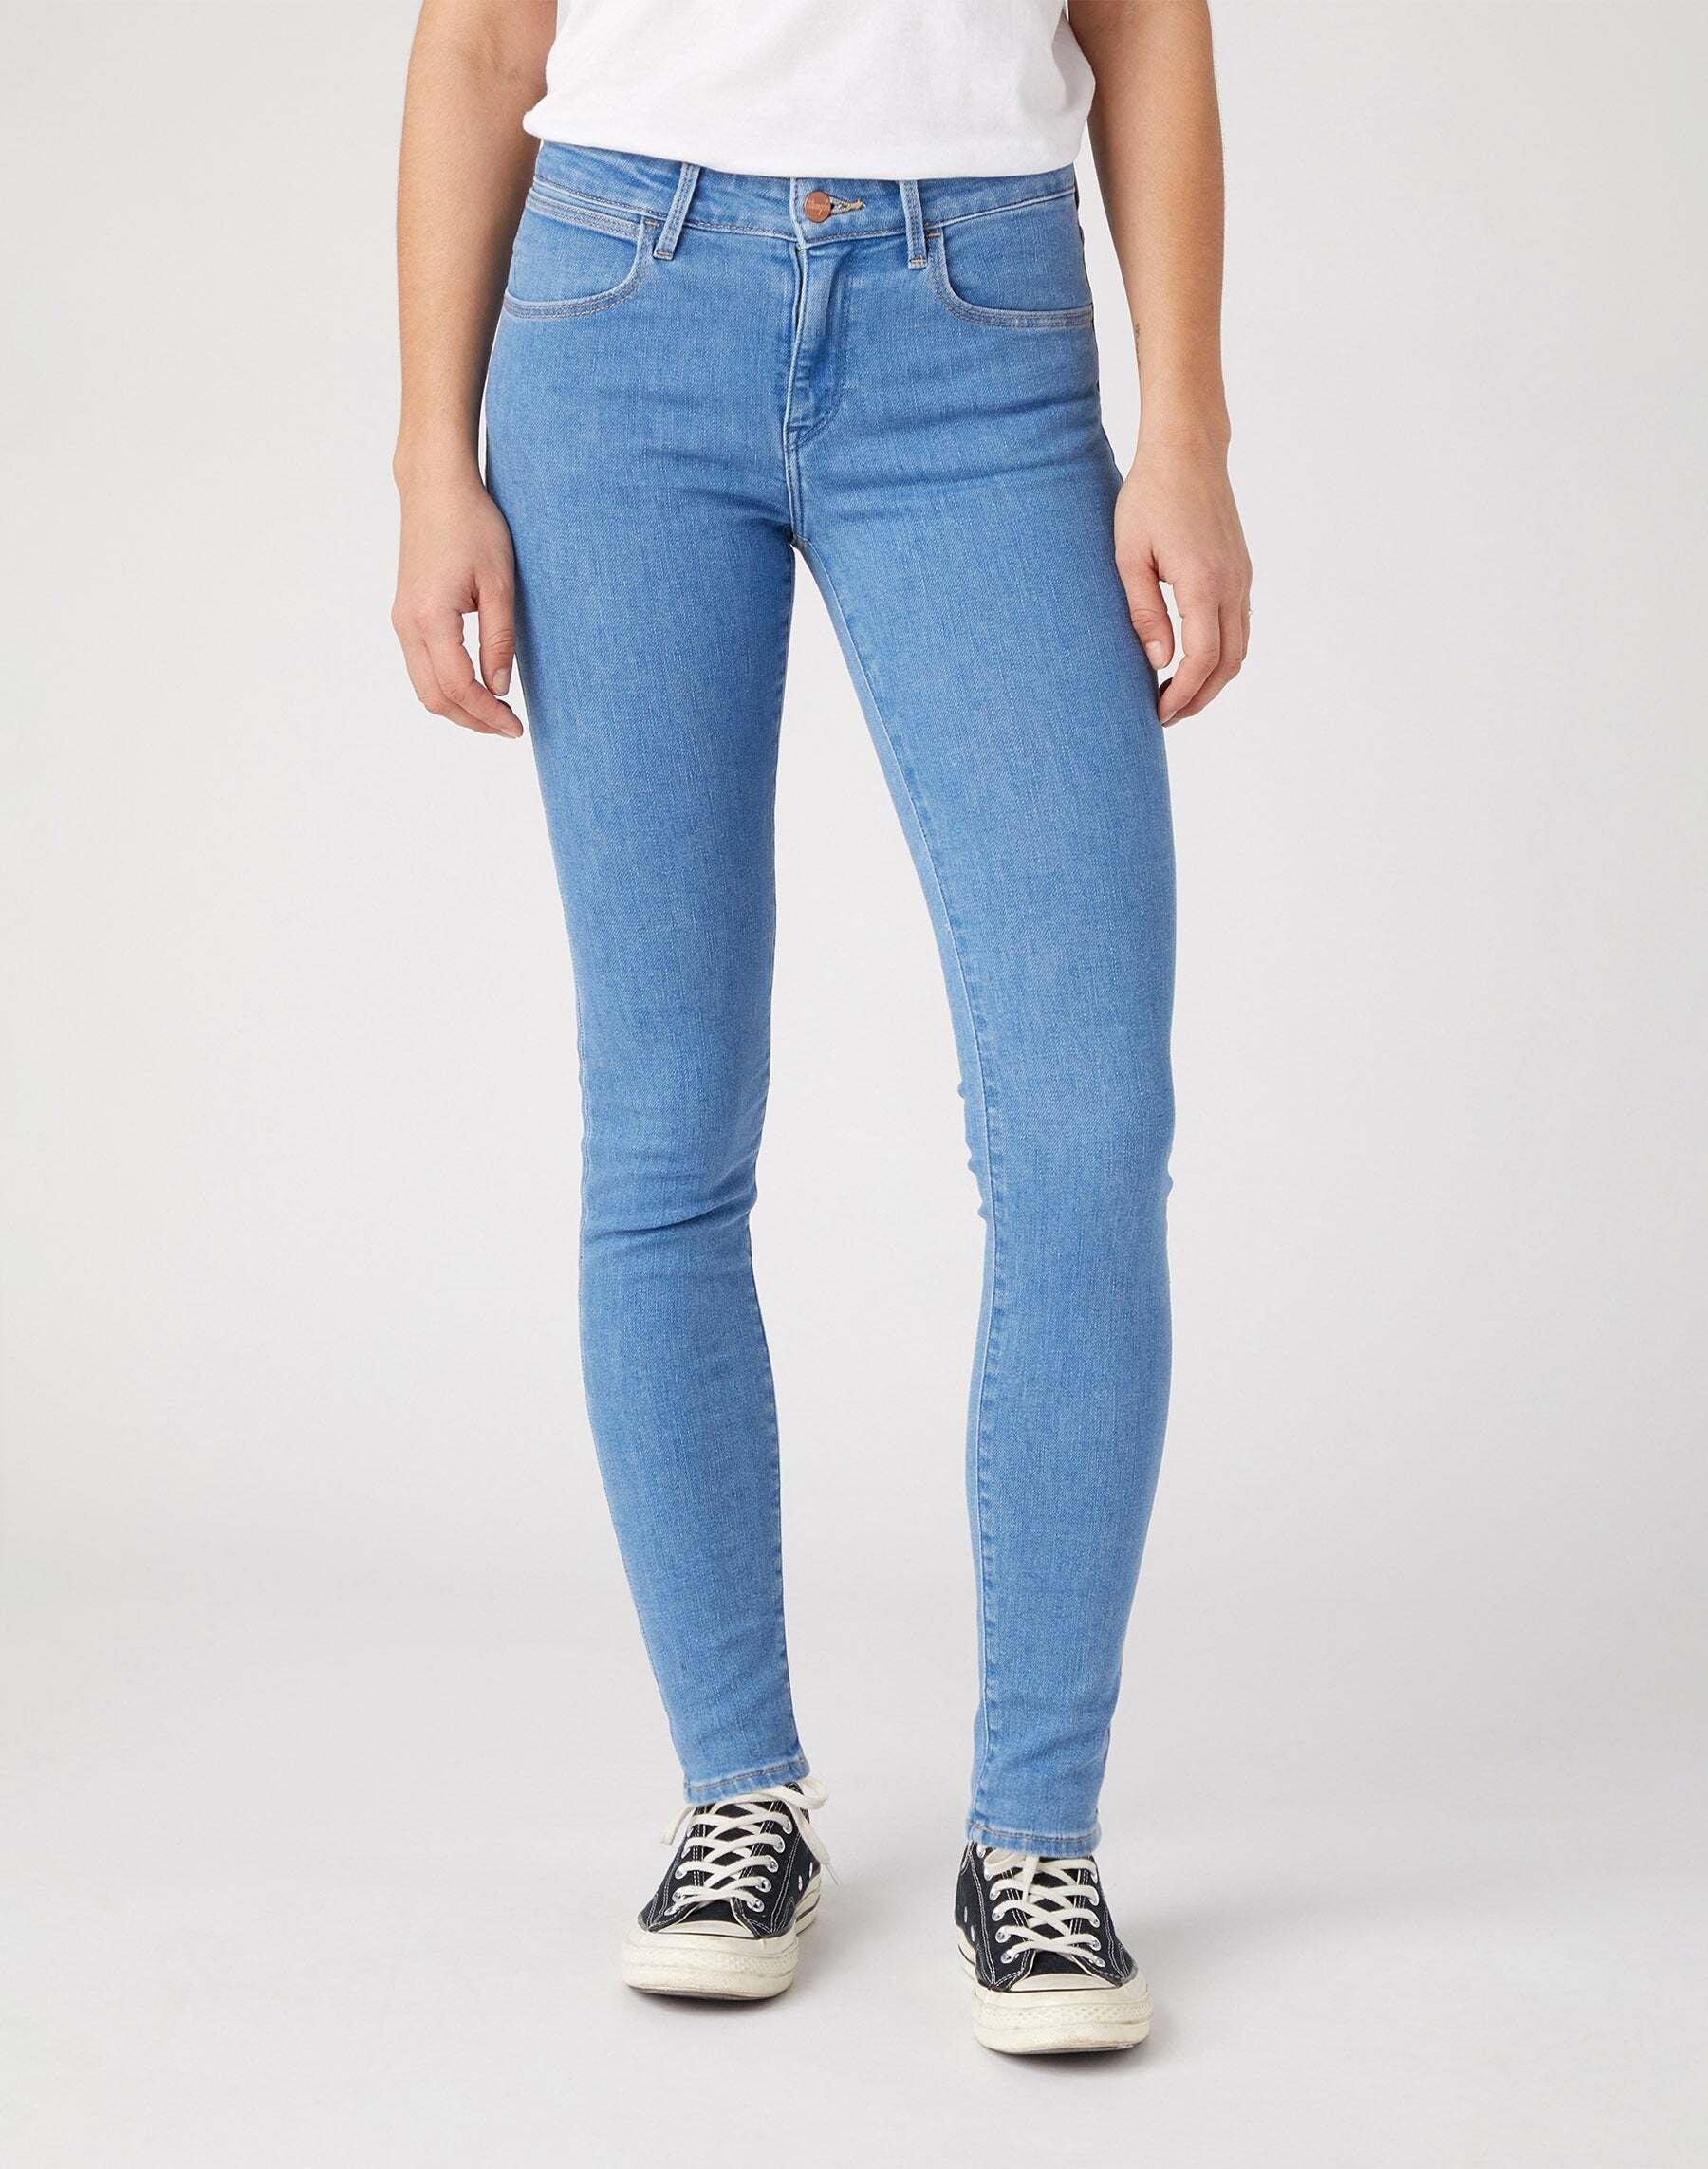 Wrangler  Jeans Skinny 